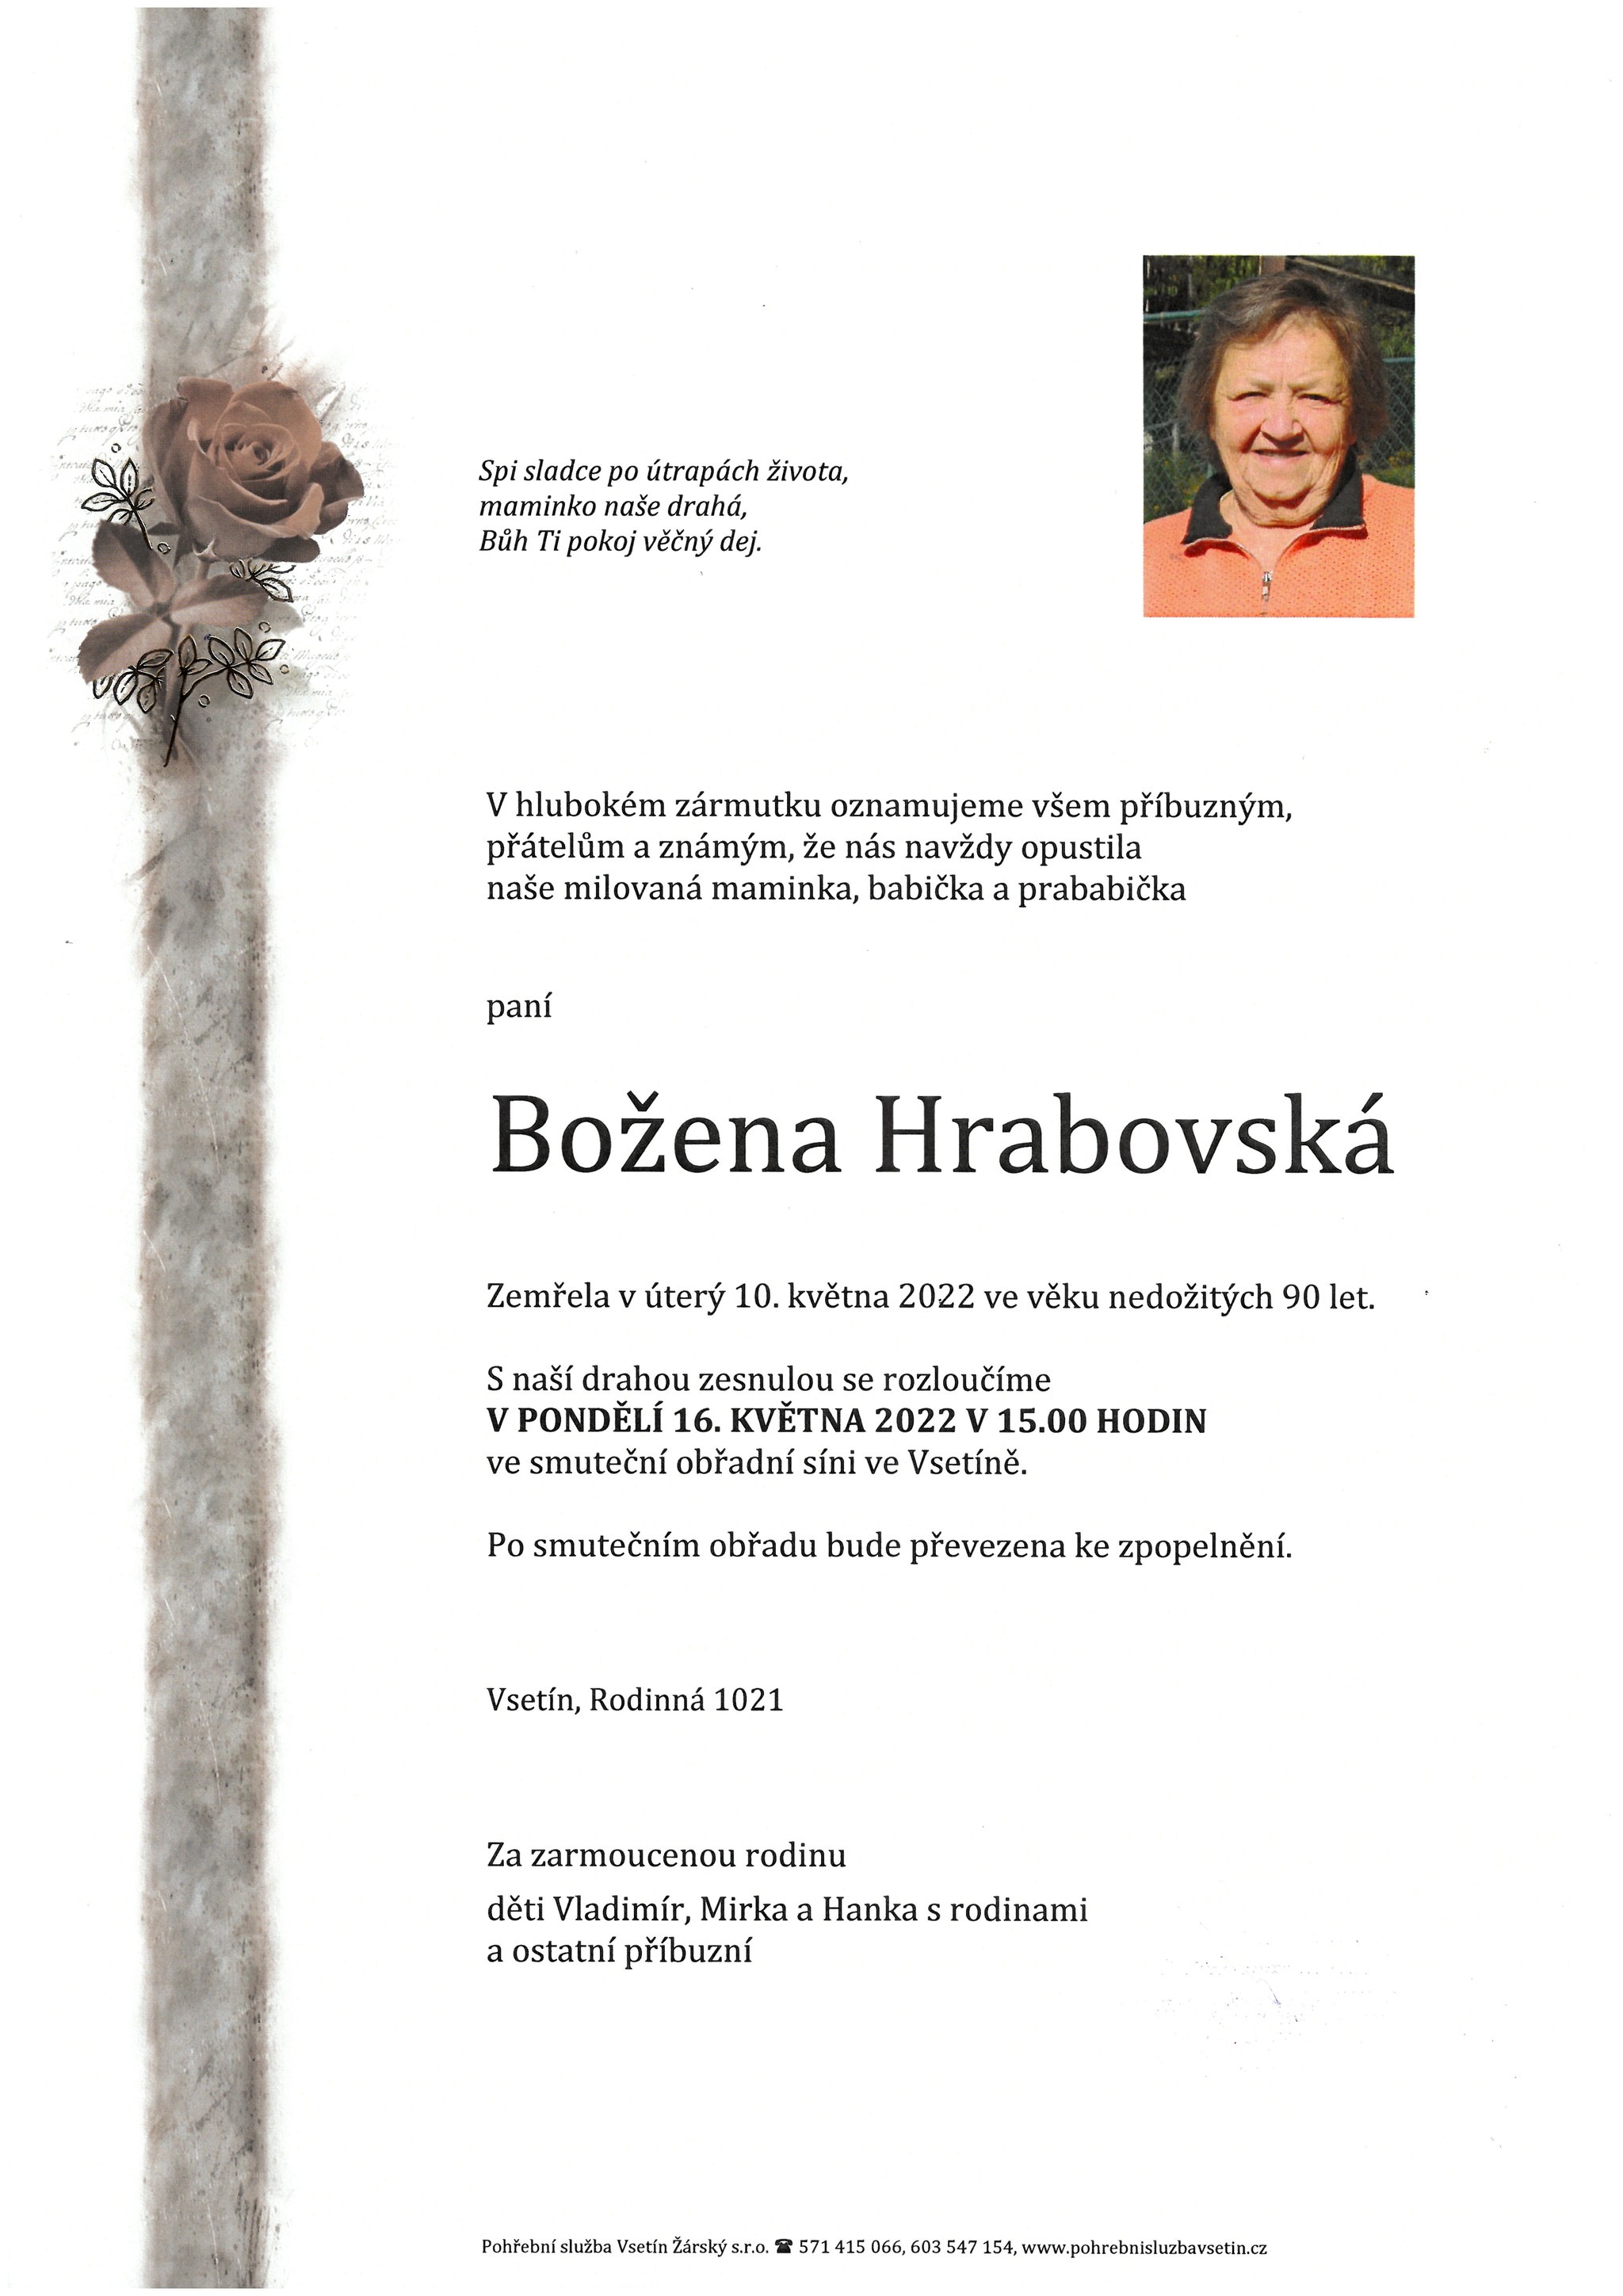 Božena Hrabovská